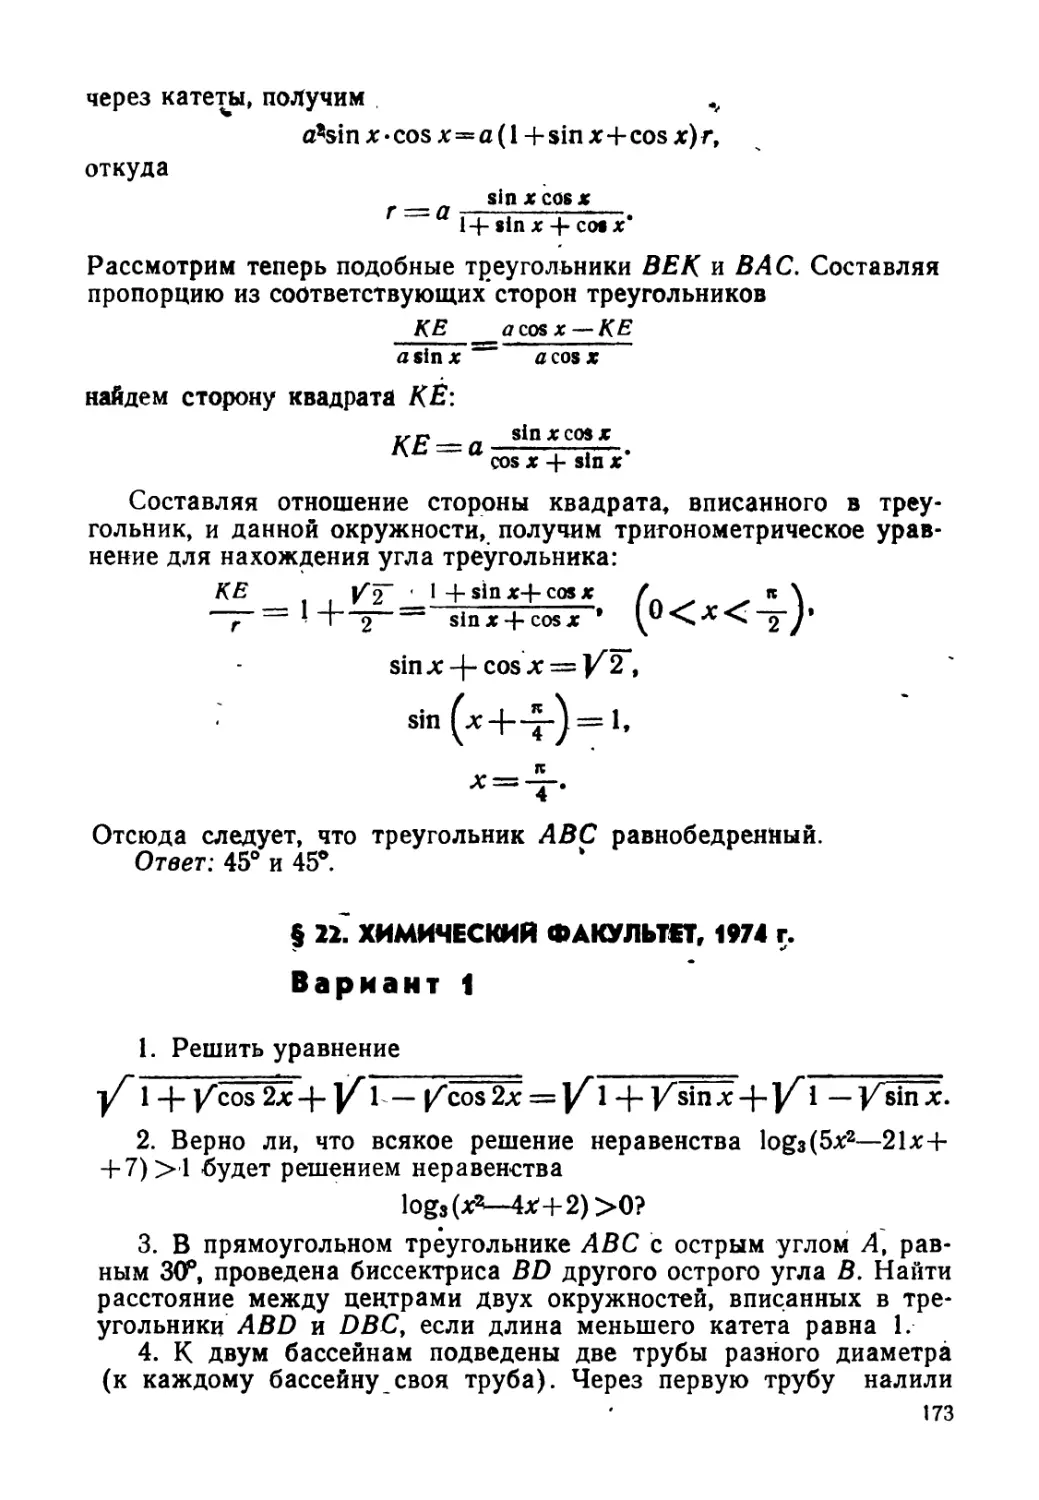 § 22. Химический факультет, 1974 г